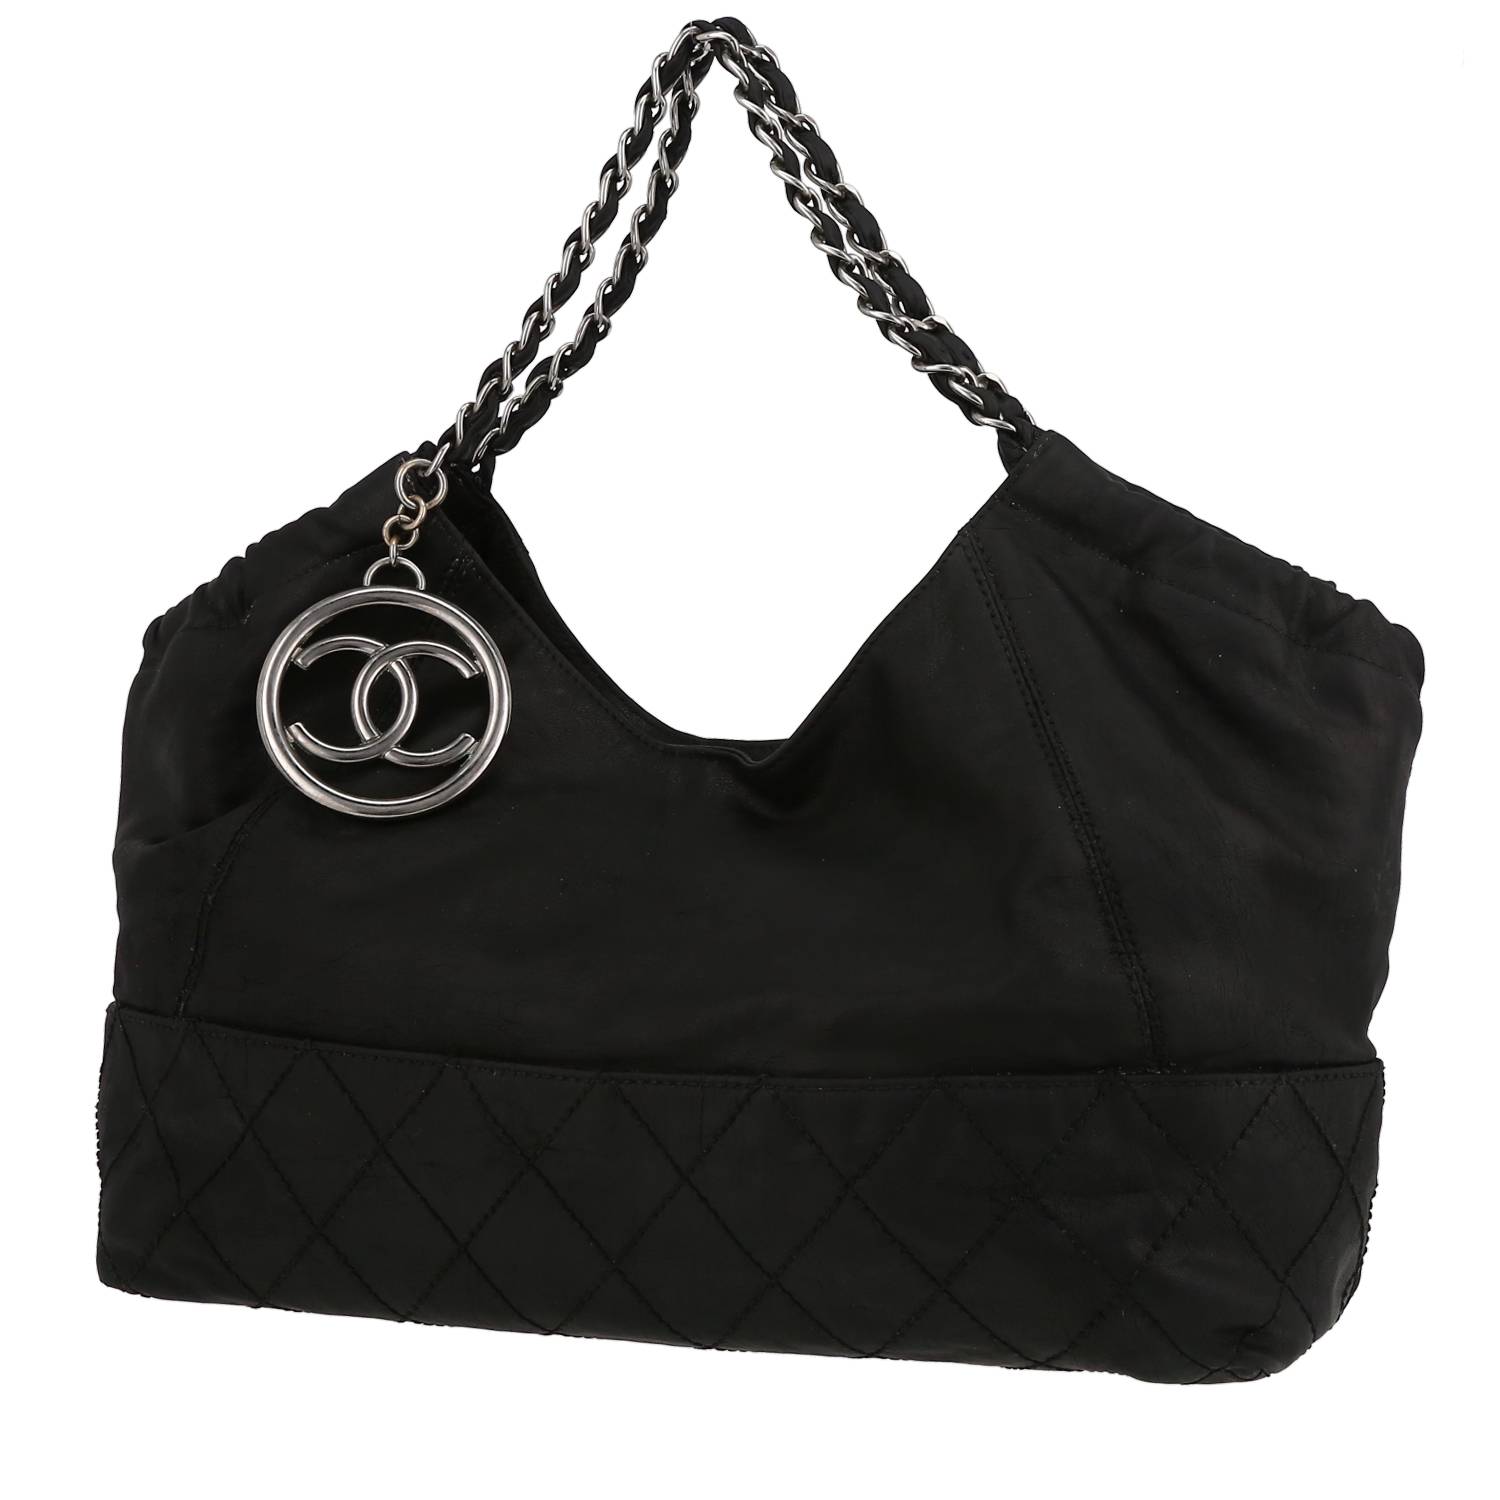 Chanel 2000s Pink Quilted Shoulder Bag - shop 